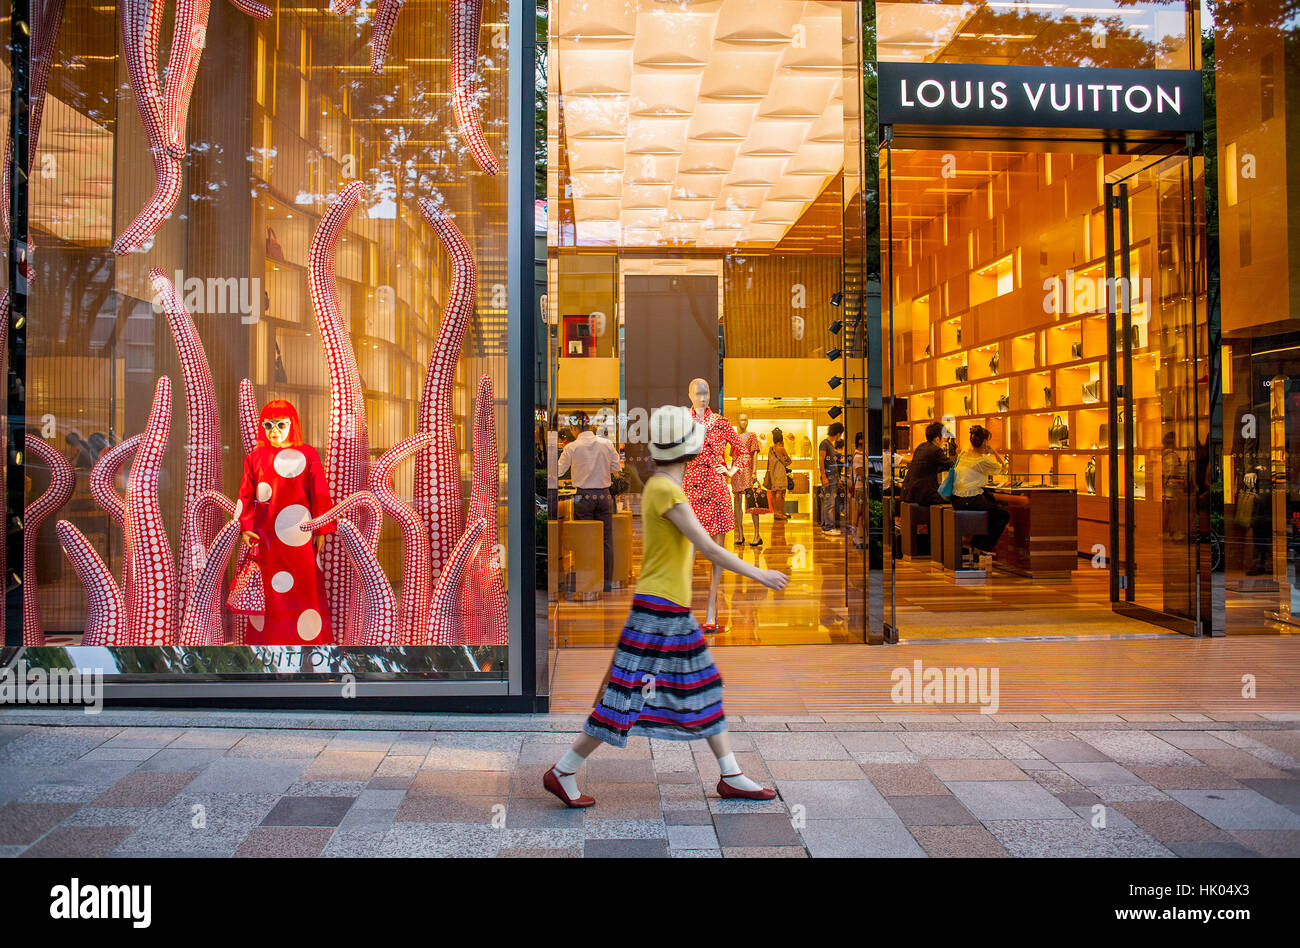 Louis Vuitton Store - Jun Aoki (exterior façade), The trans…